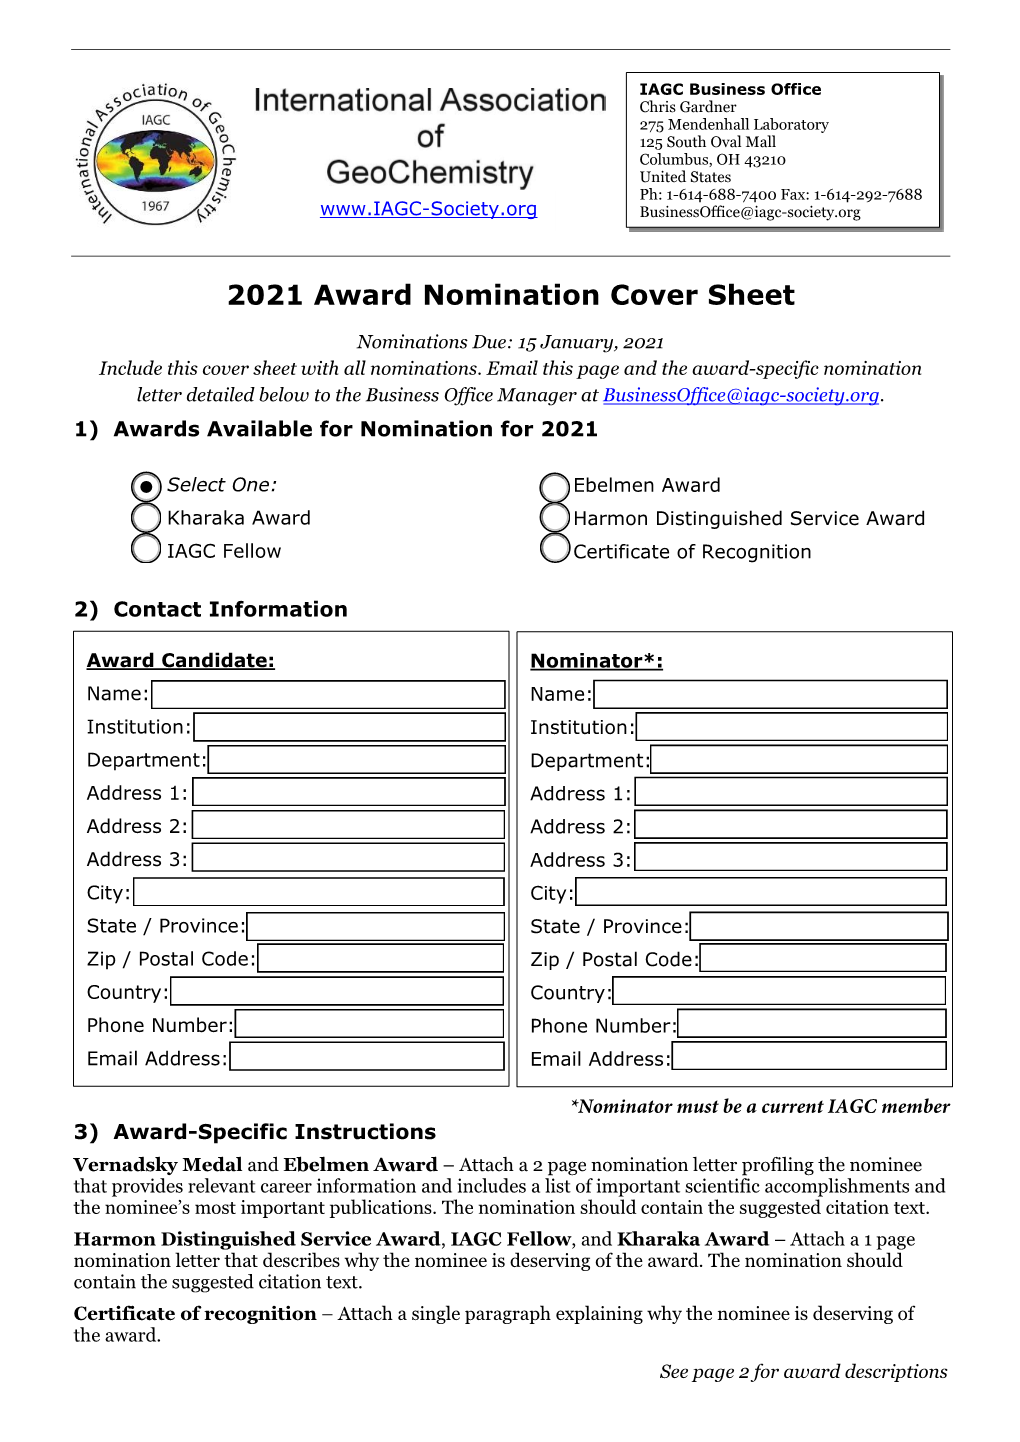 2021 Award Nomination Cover Sheet